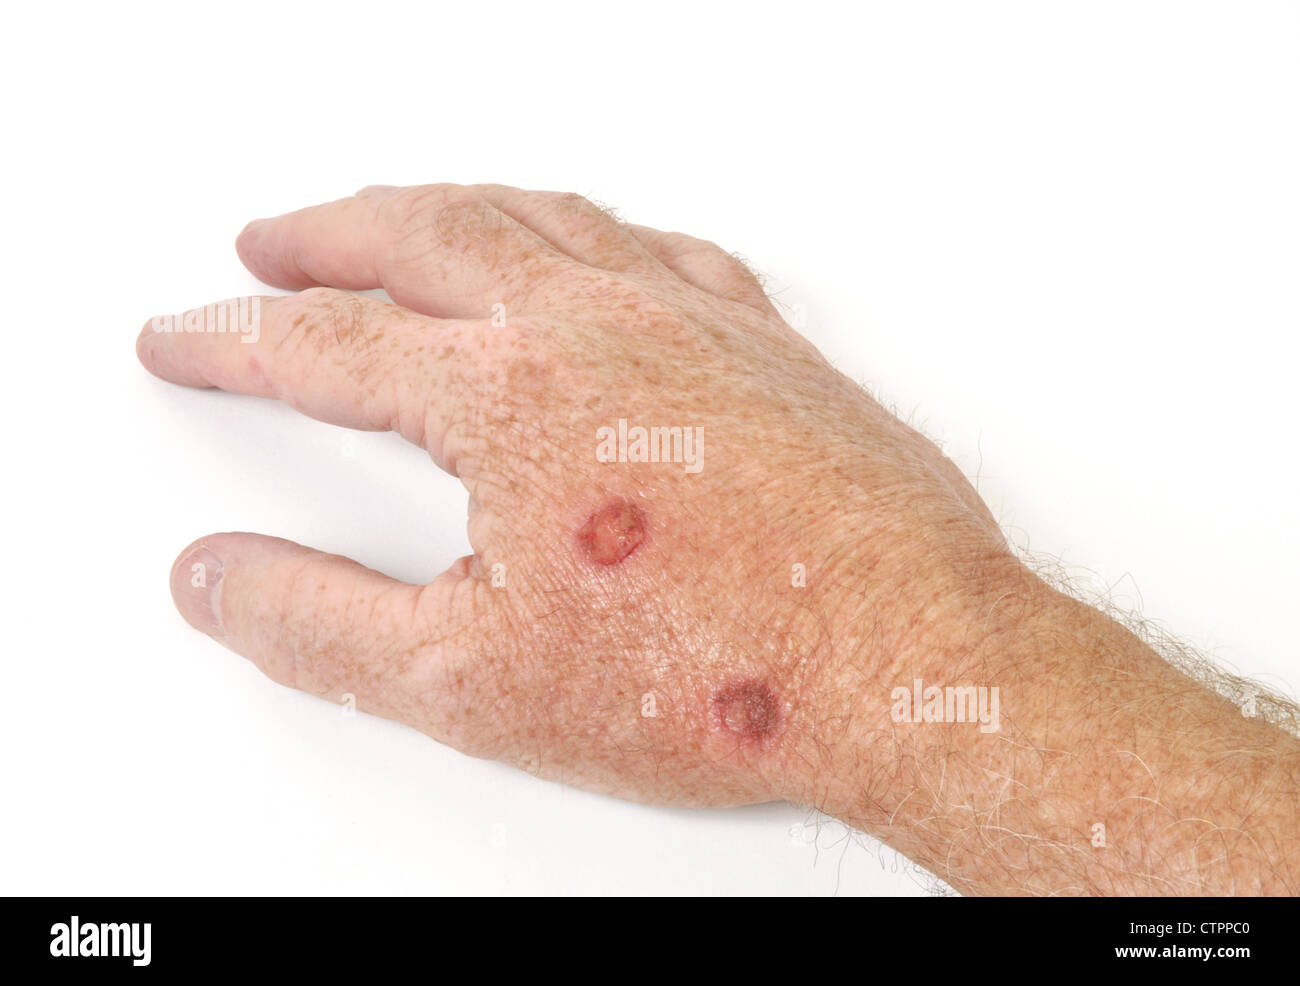 Kryotherapie Behandlung präkanzeröse Zellen aus einer Hand zu entfernen Stockfoto